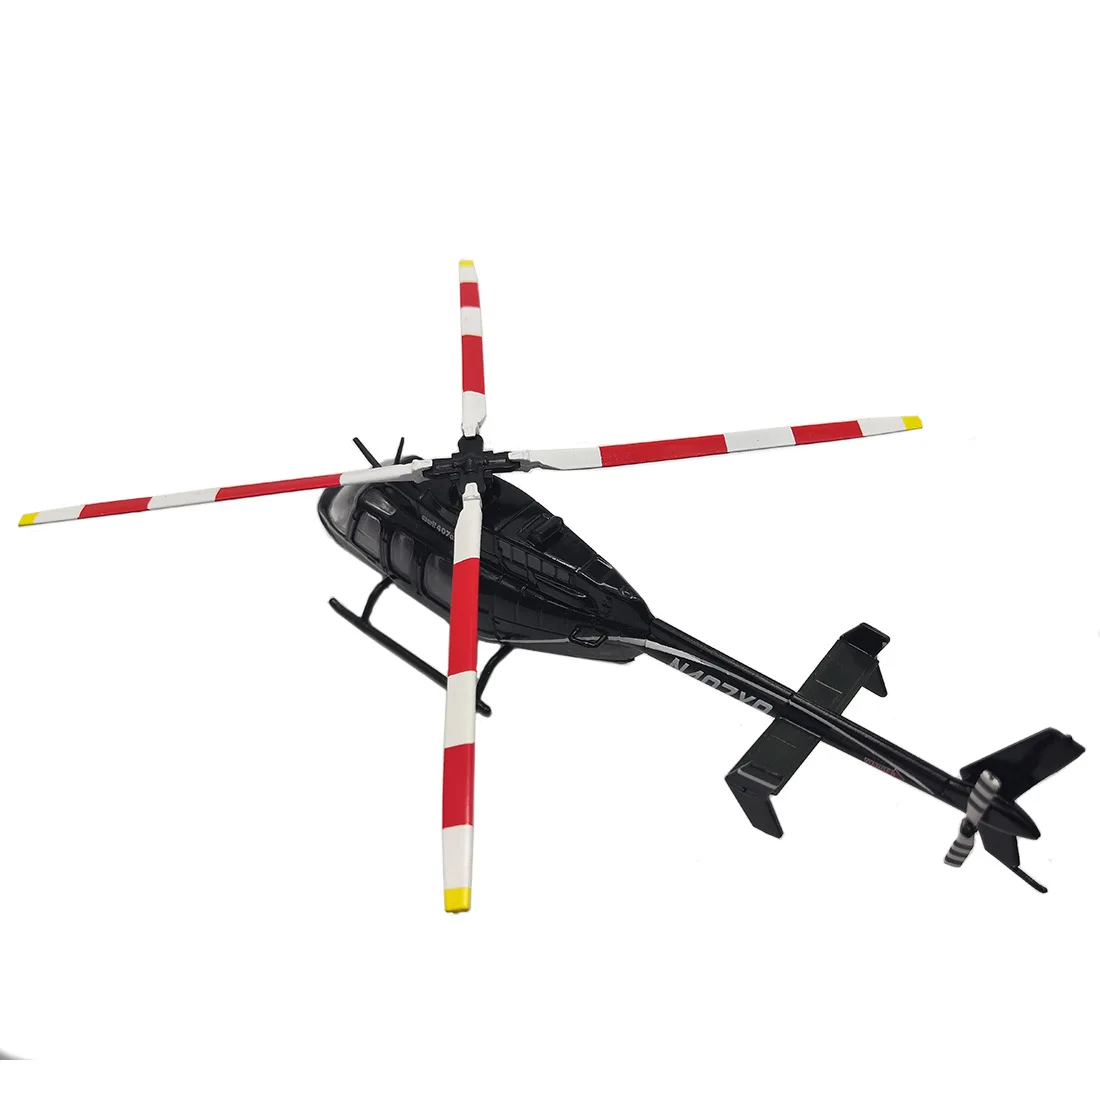 Panzerkampf 1/72 масштаб военная модель игрушечный колокольчик 407GX вертолет литой металлический самолет модель игрушка для коллекции, подарок, дети